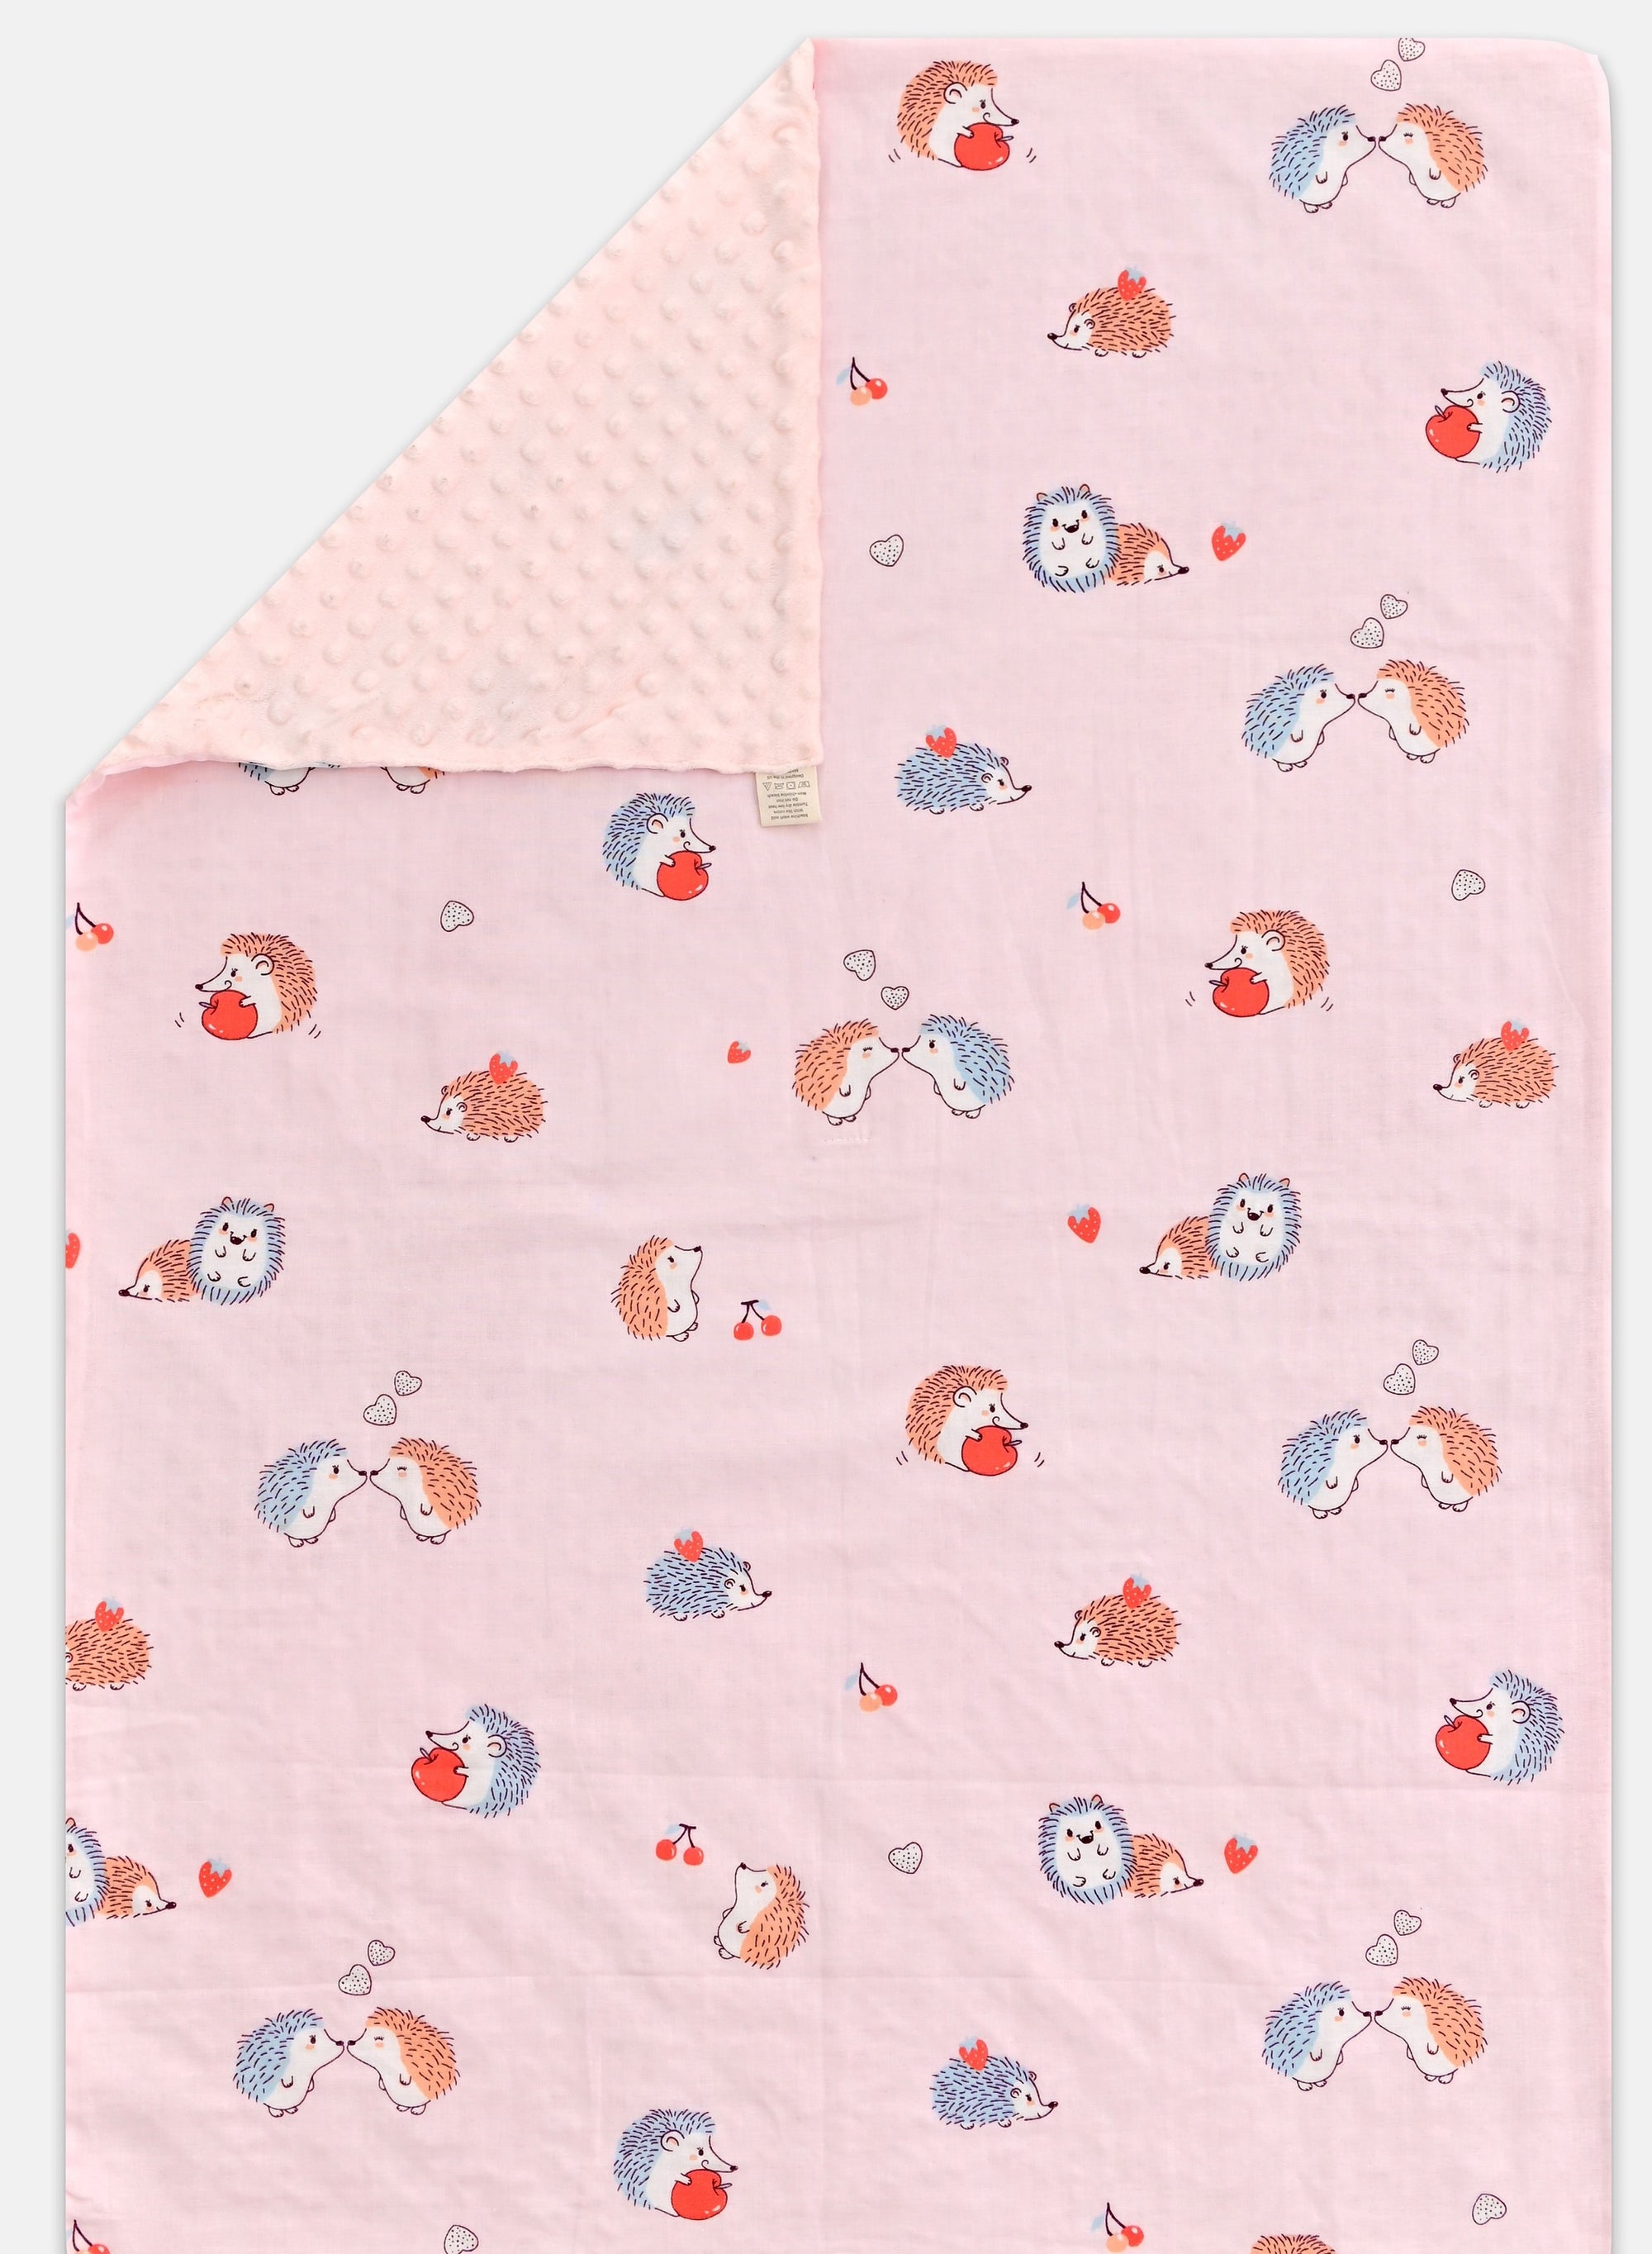 Dotted Back Baby Blanket - Pink Hedgehog